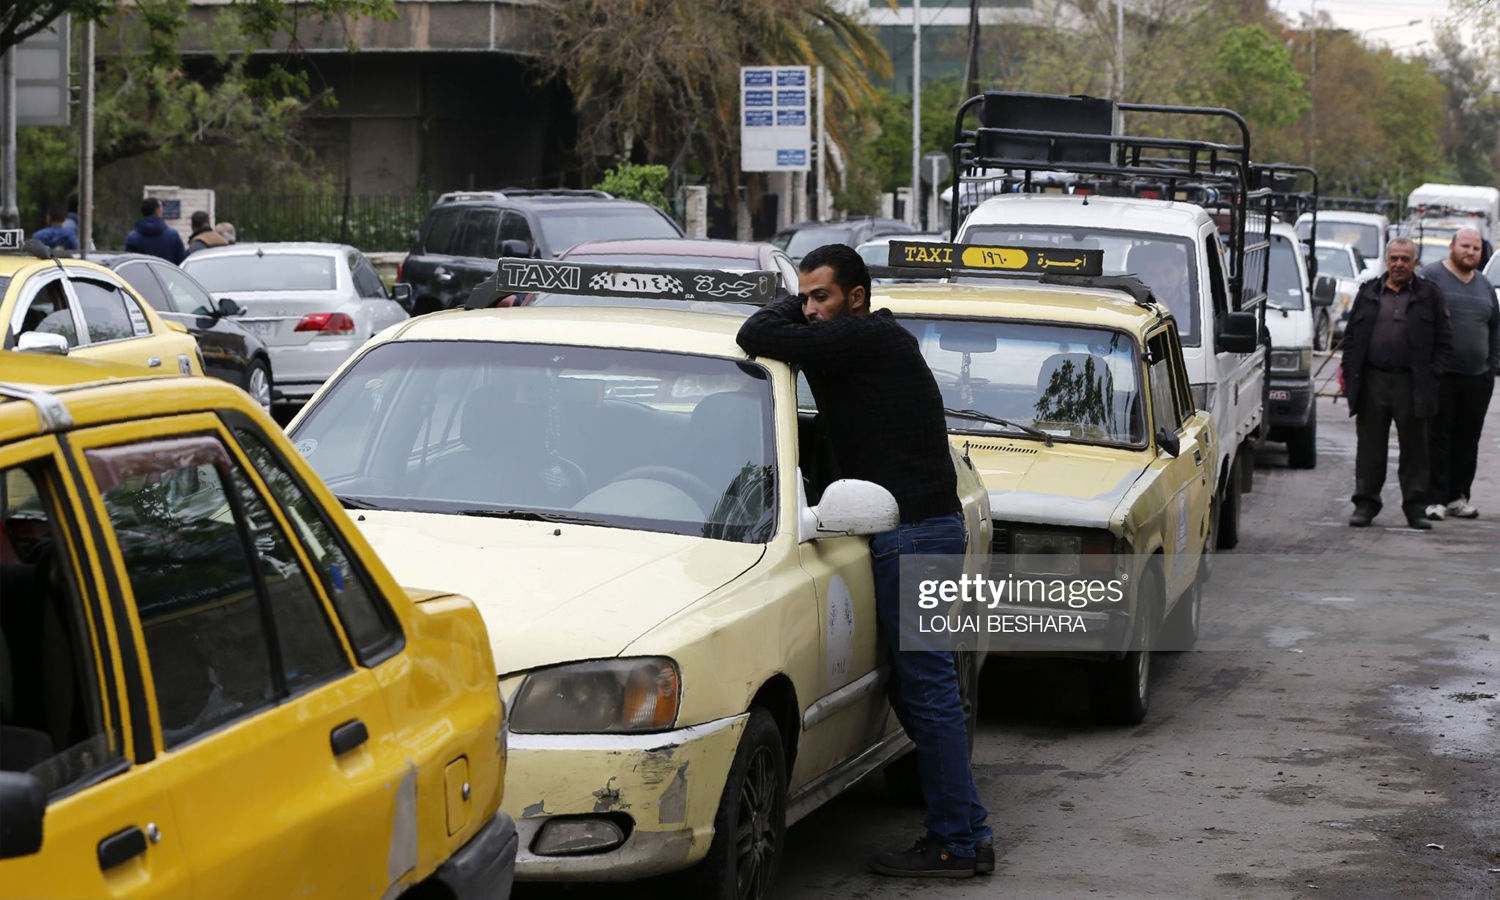 سائقون يقفون في طابور للحصول على البنزين أمام محطة وقود في العاصمة السورية دمشق، 16 من نيسان 2019 (لؤي بشارة – GettyImages)